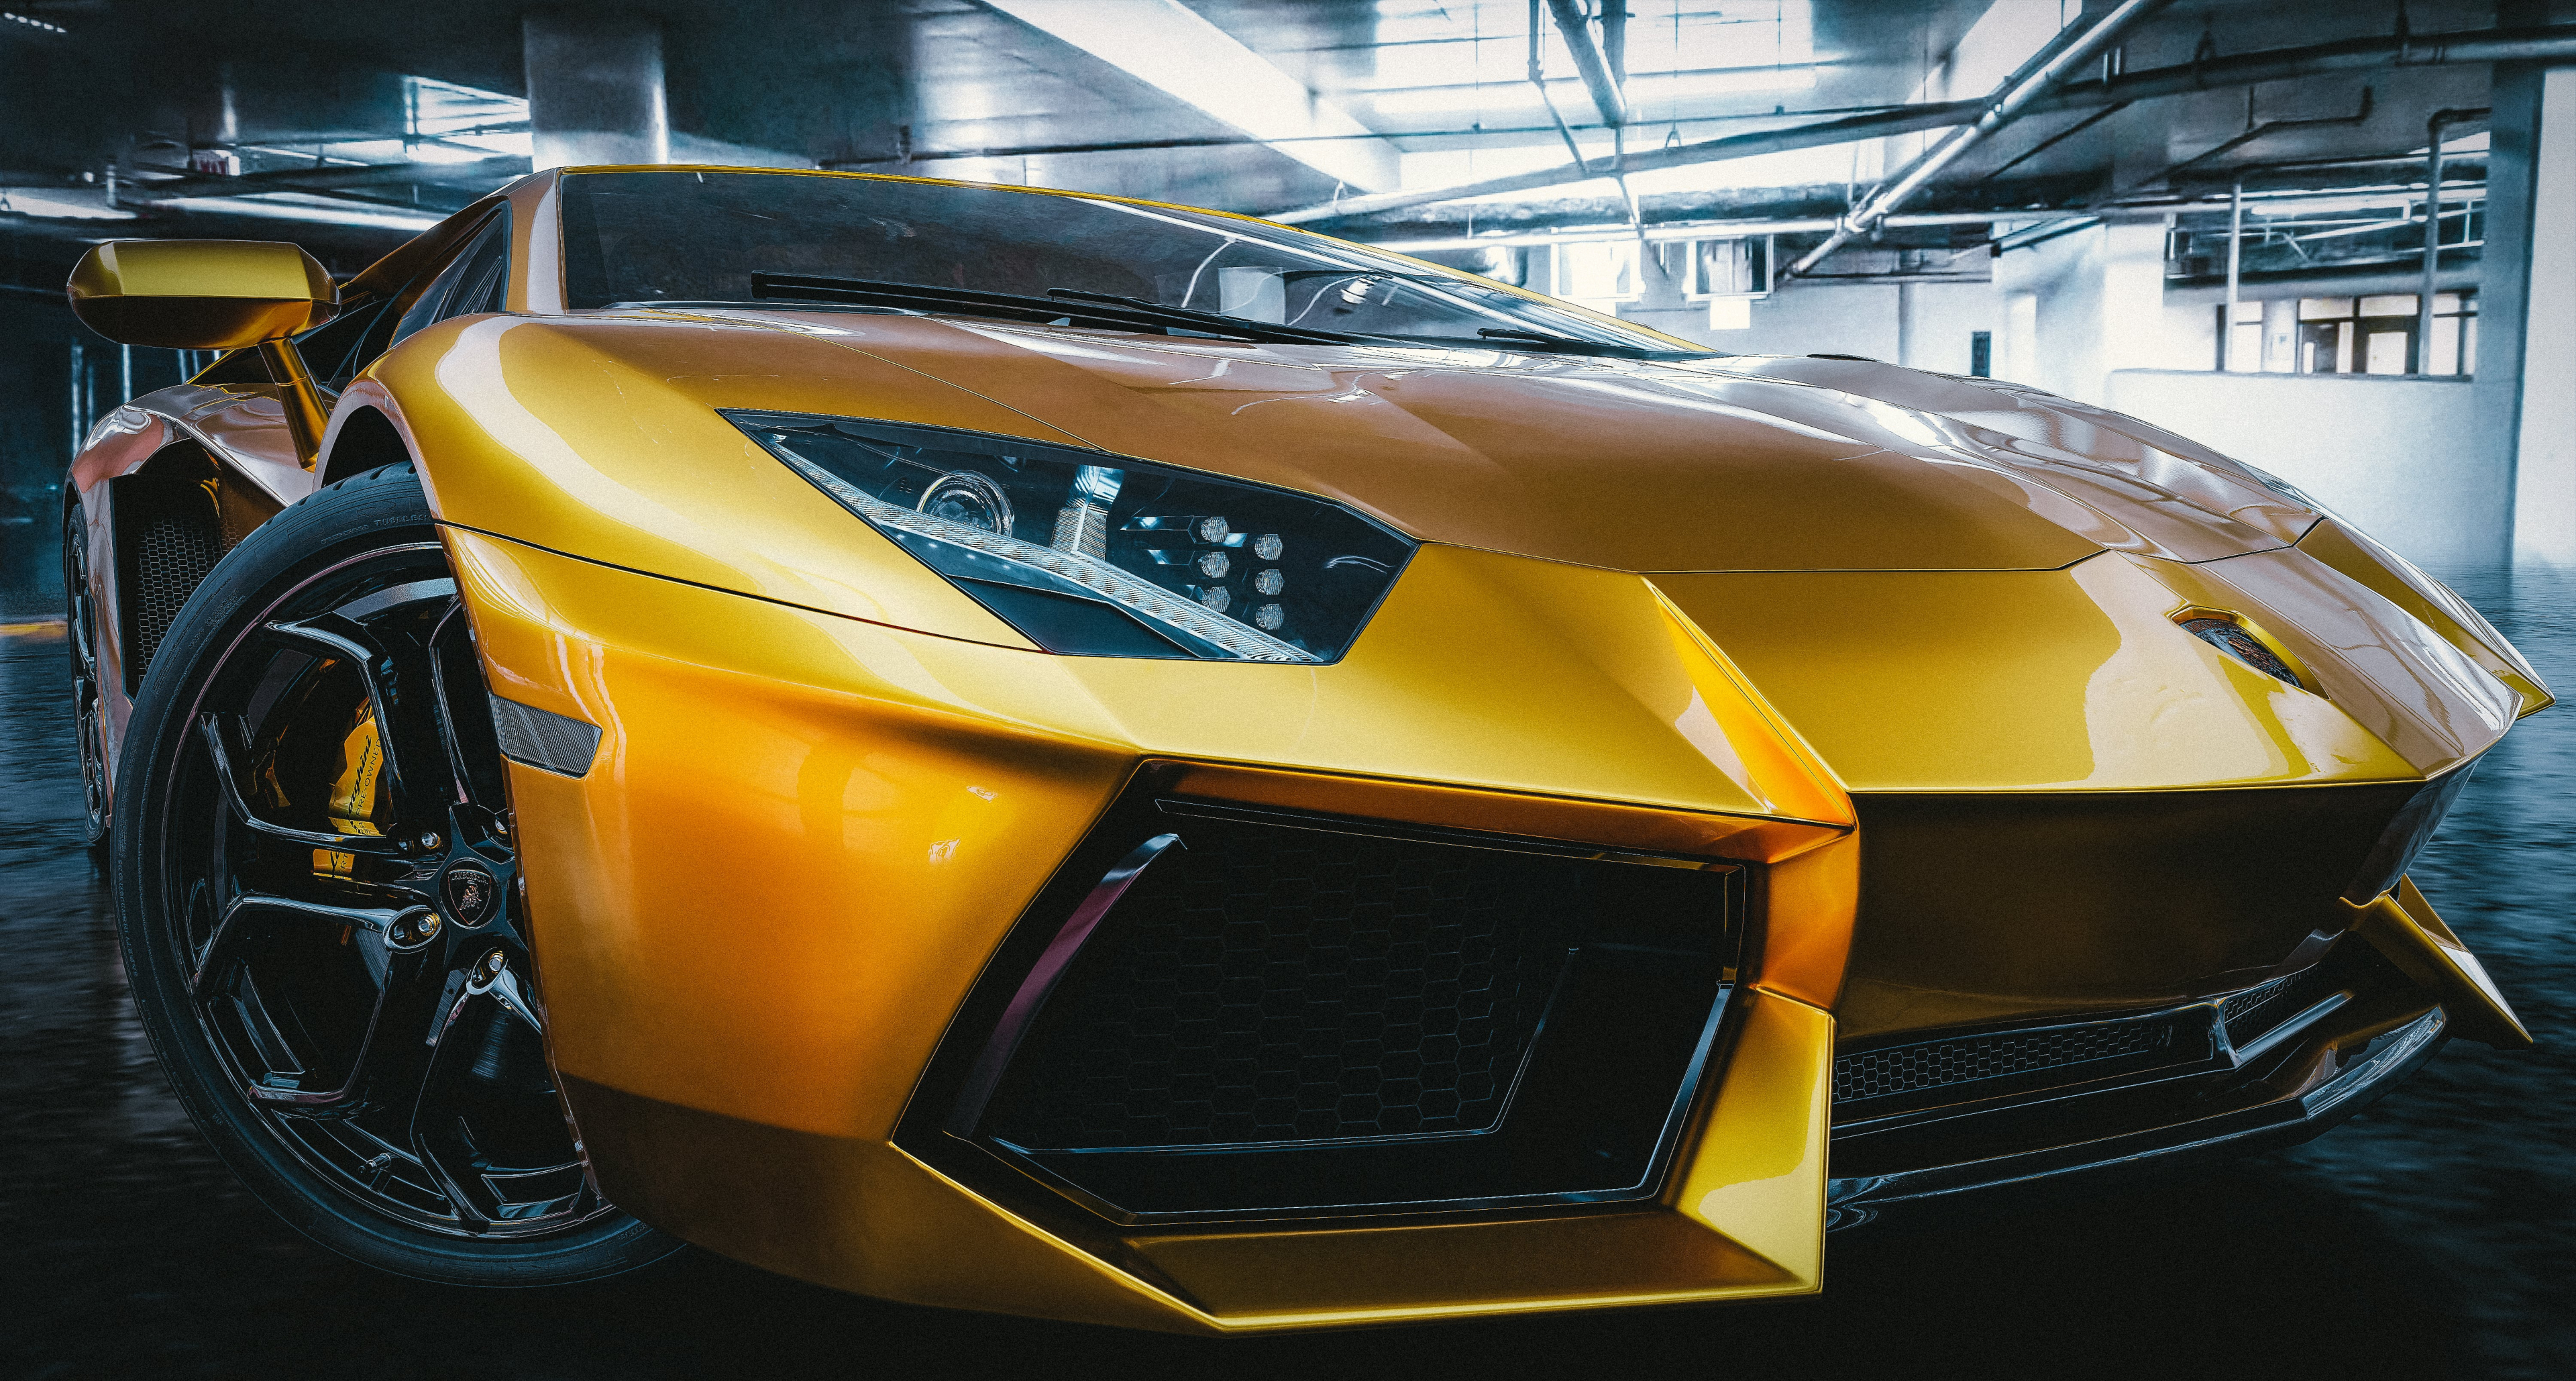 Lamborghini aventador in Blender cycles render image